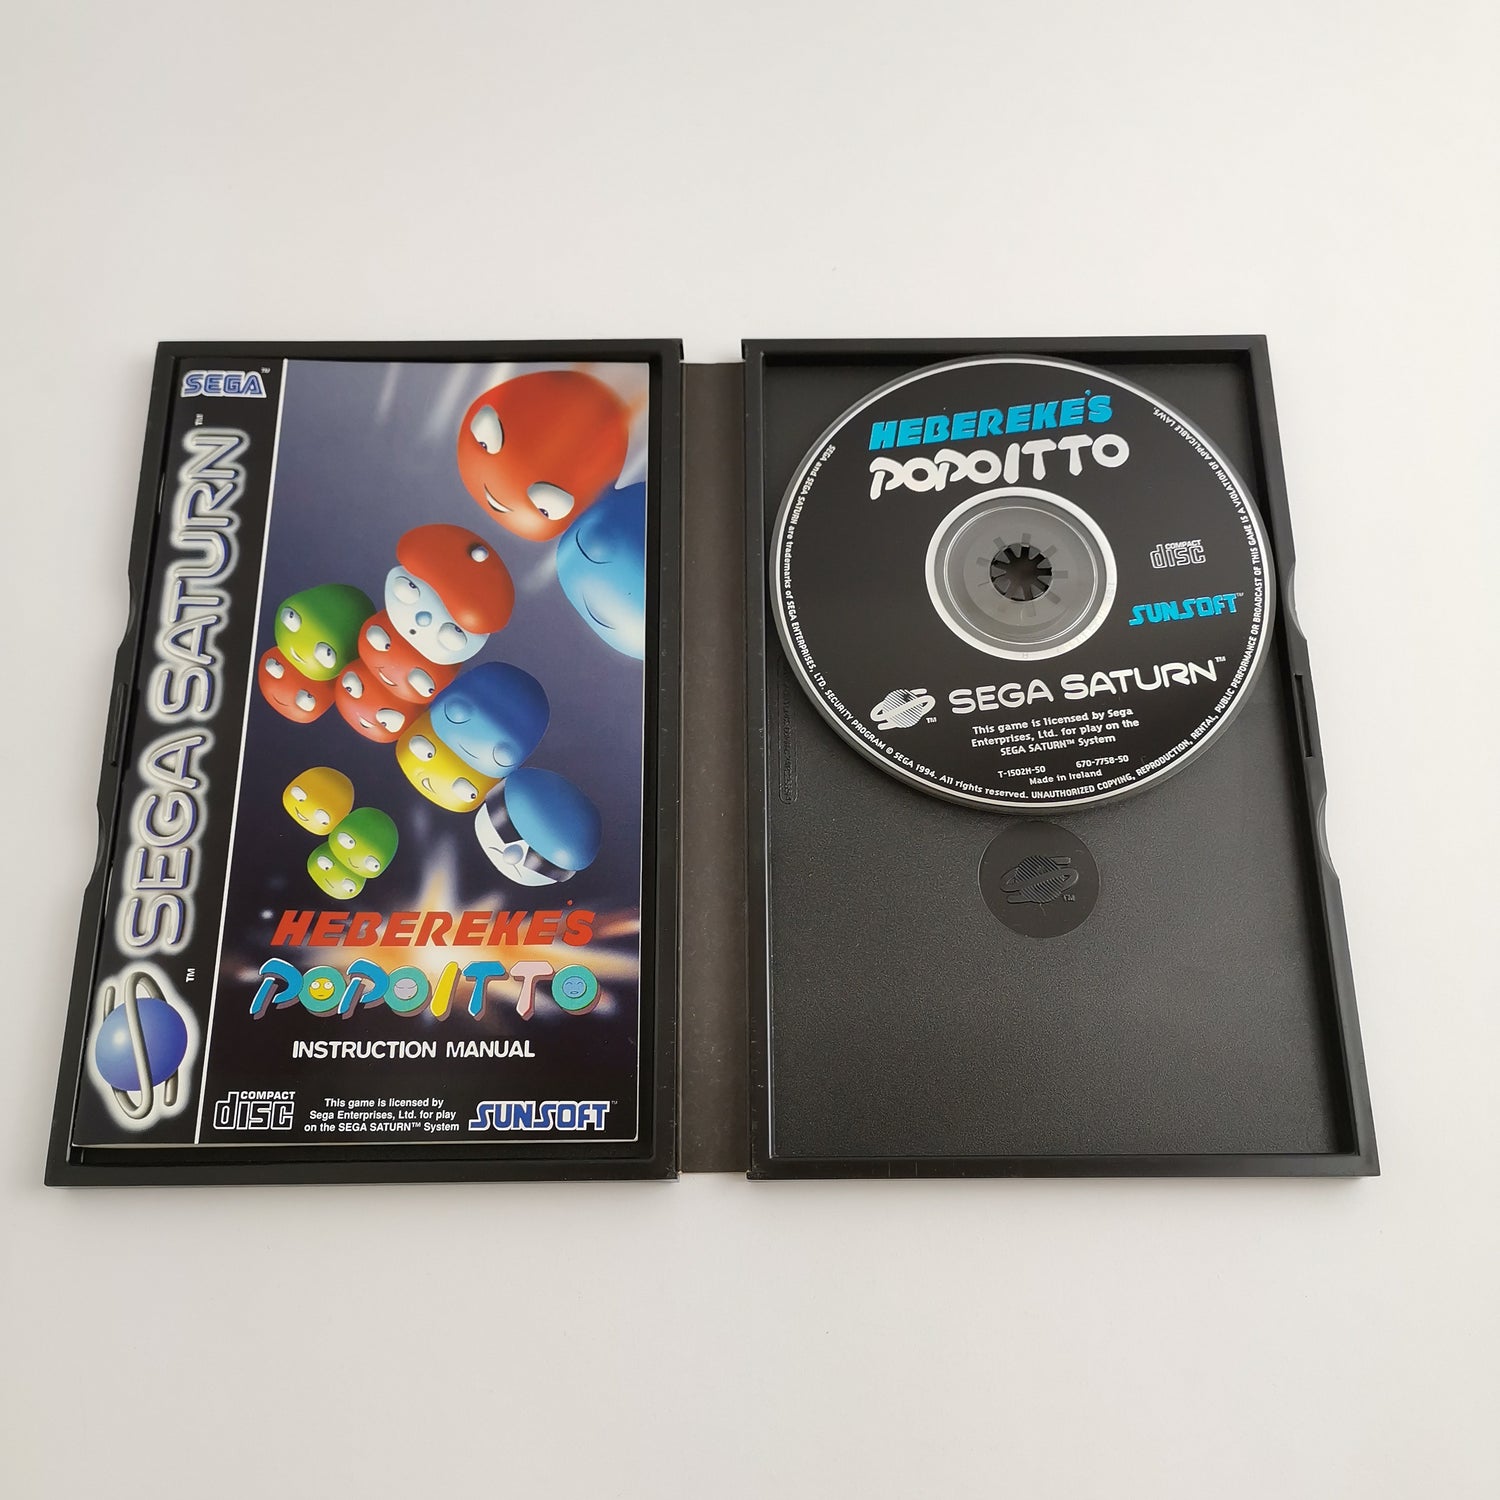 Sega Saturn Spiel : Heberekes Popoitto von Sunsoft - OVP & Anleitung | PAL